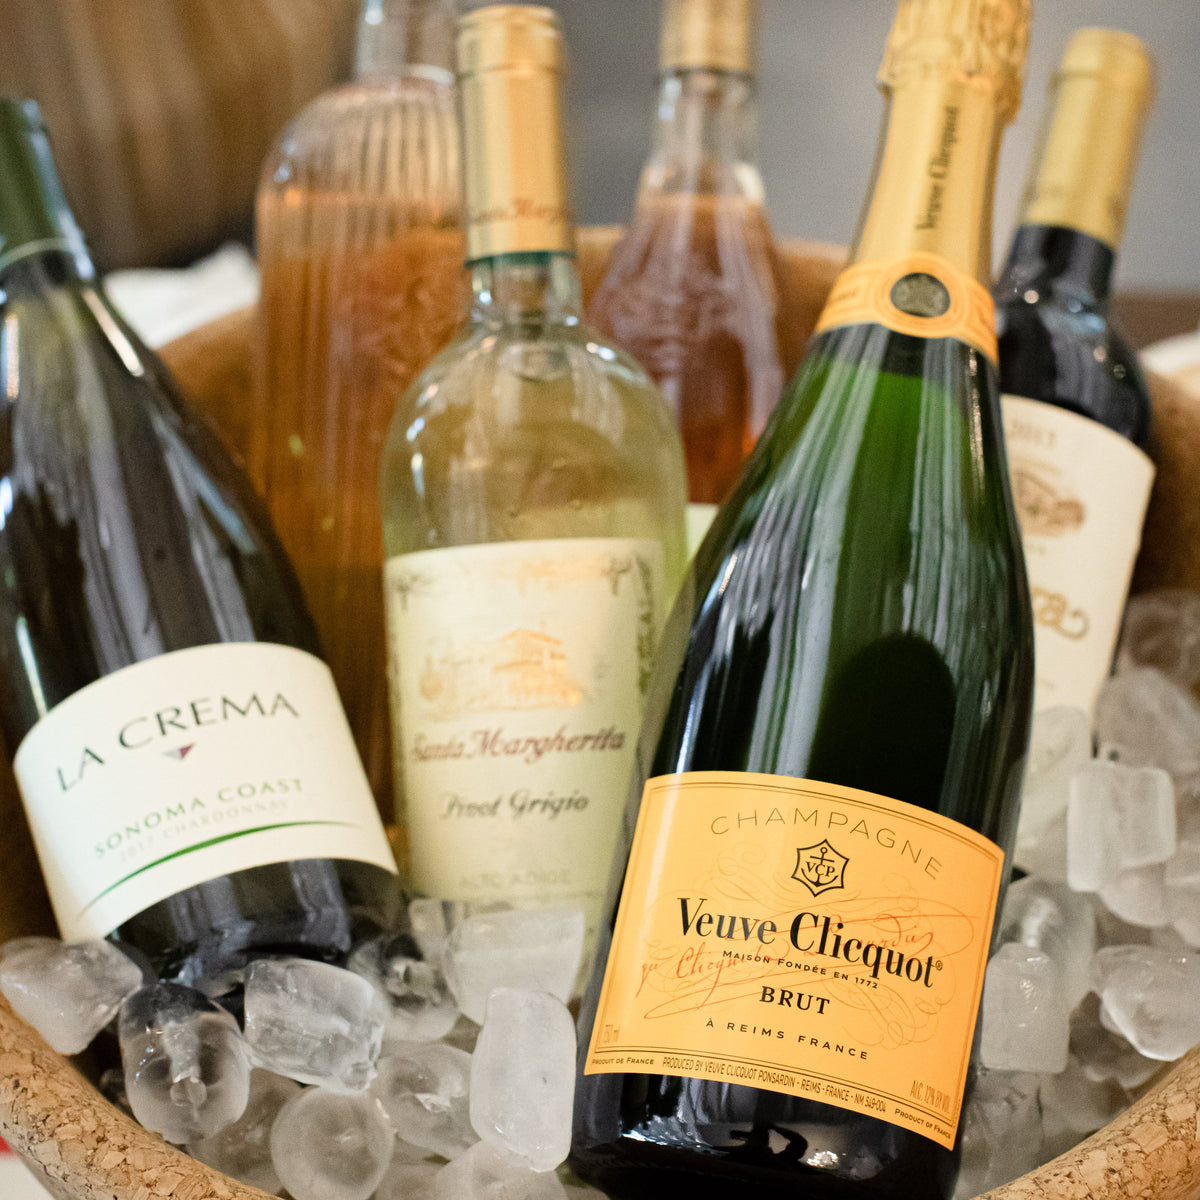 Veuve Clicquot Champagne Yellow Label 750ml – Shawn Fine Wine